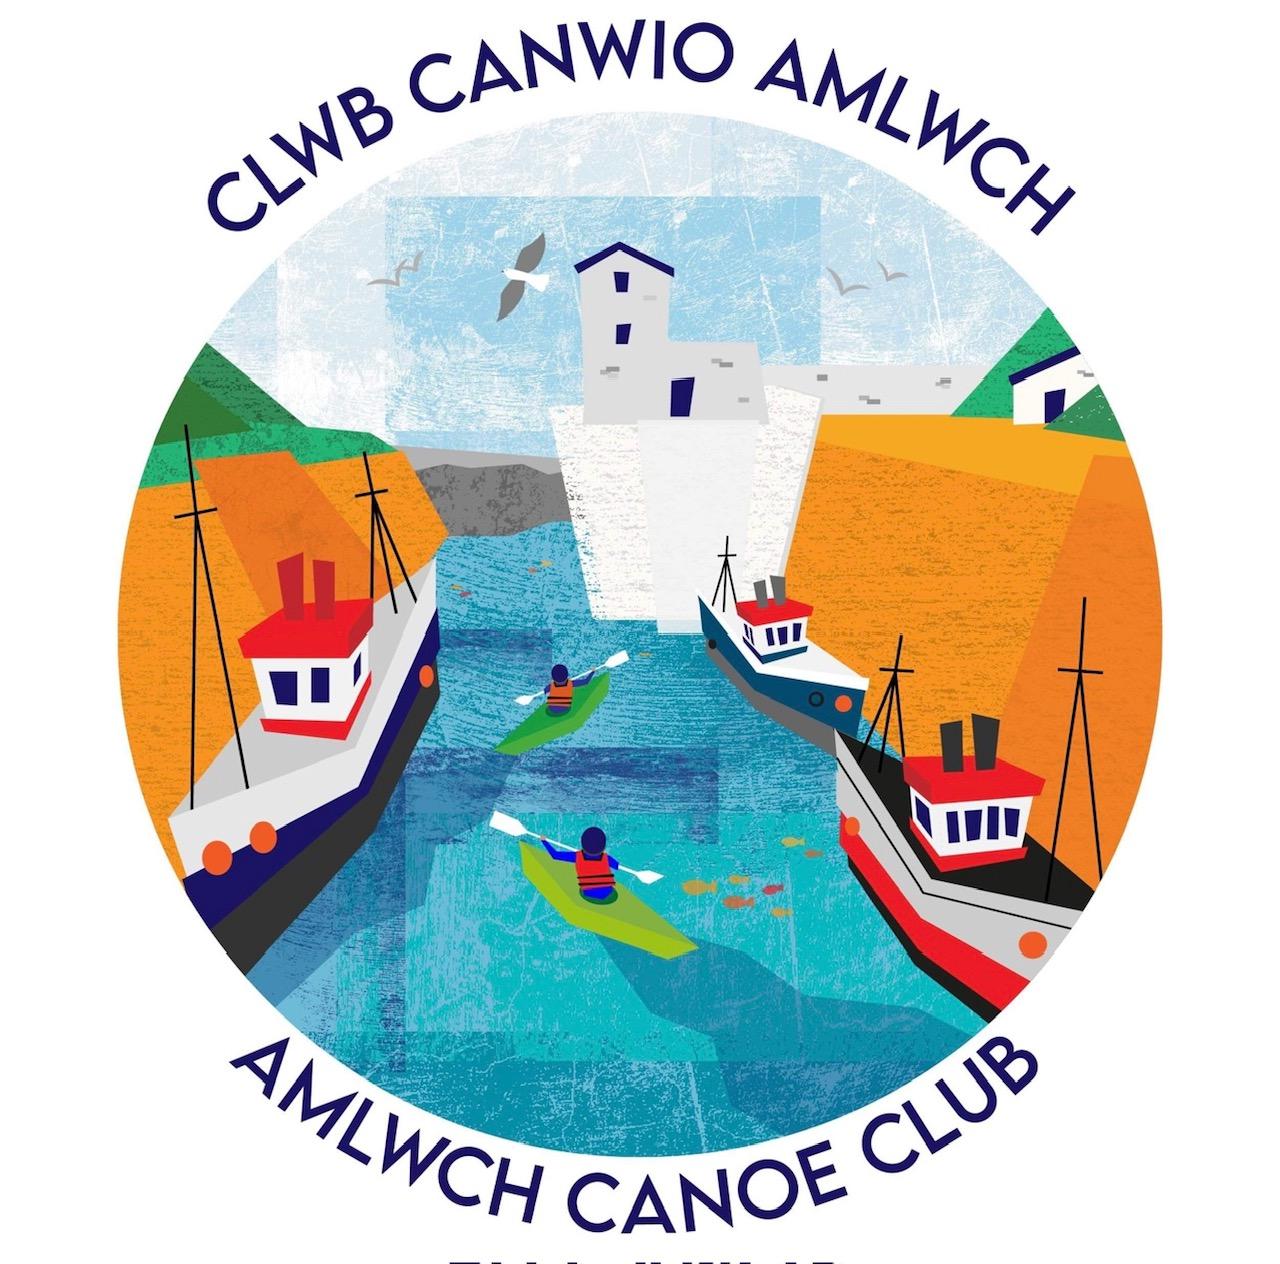 Clwb Canwio Amlwch logo